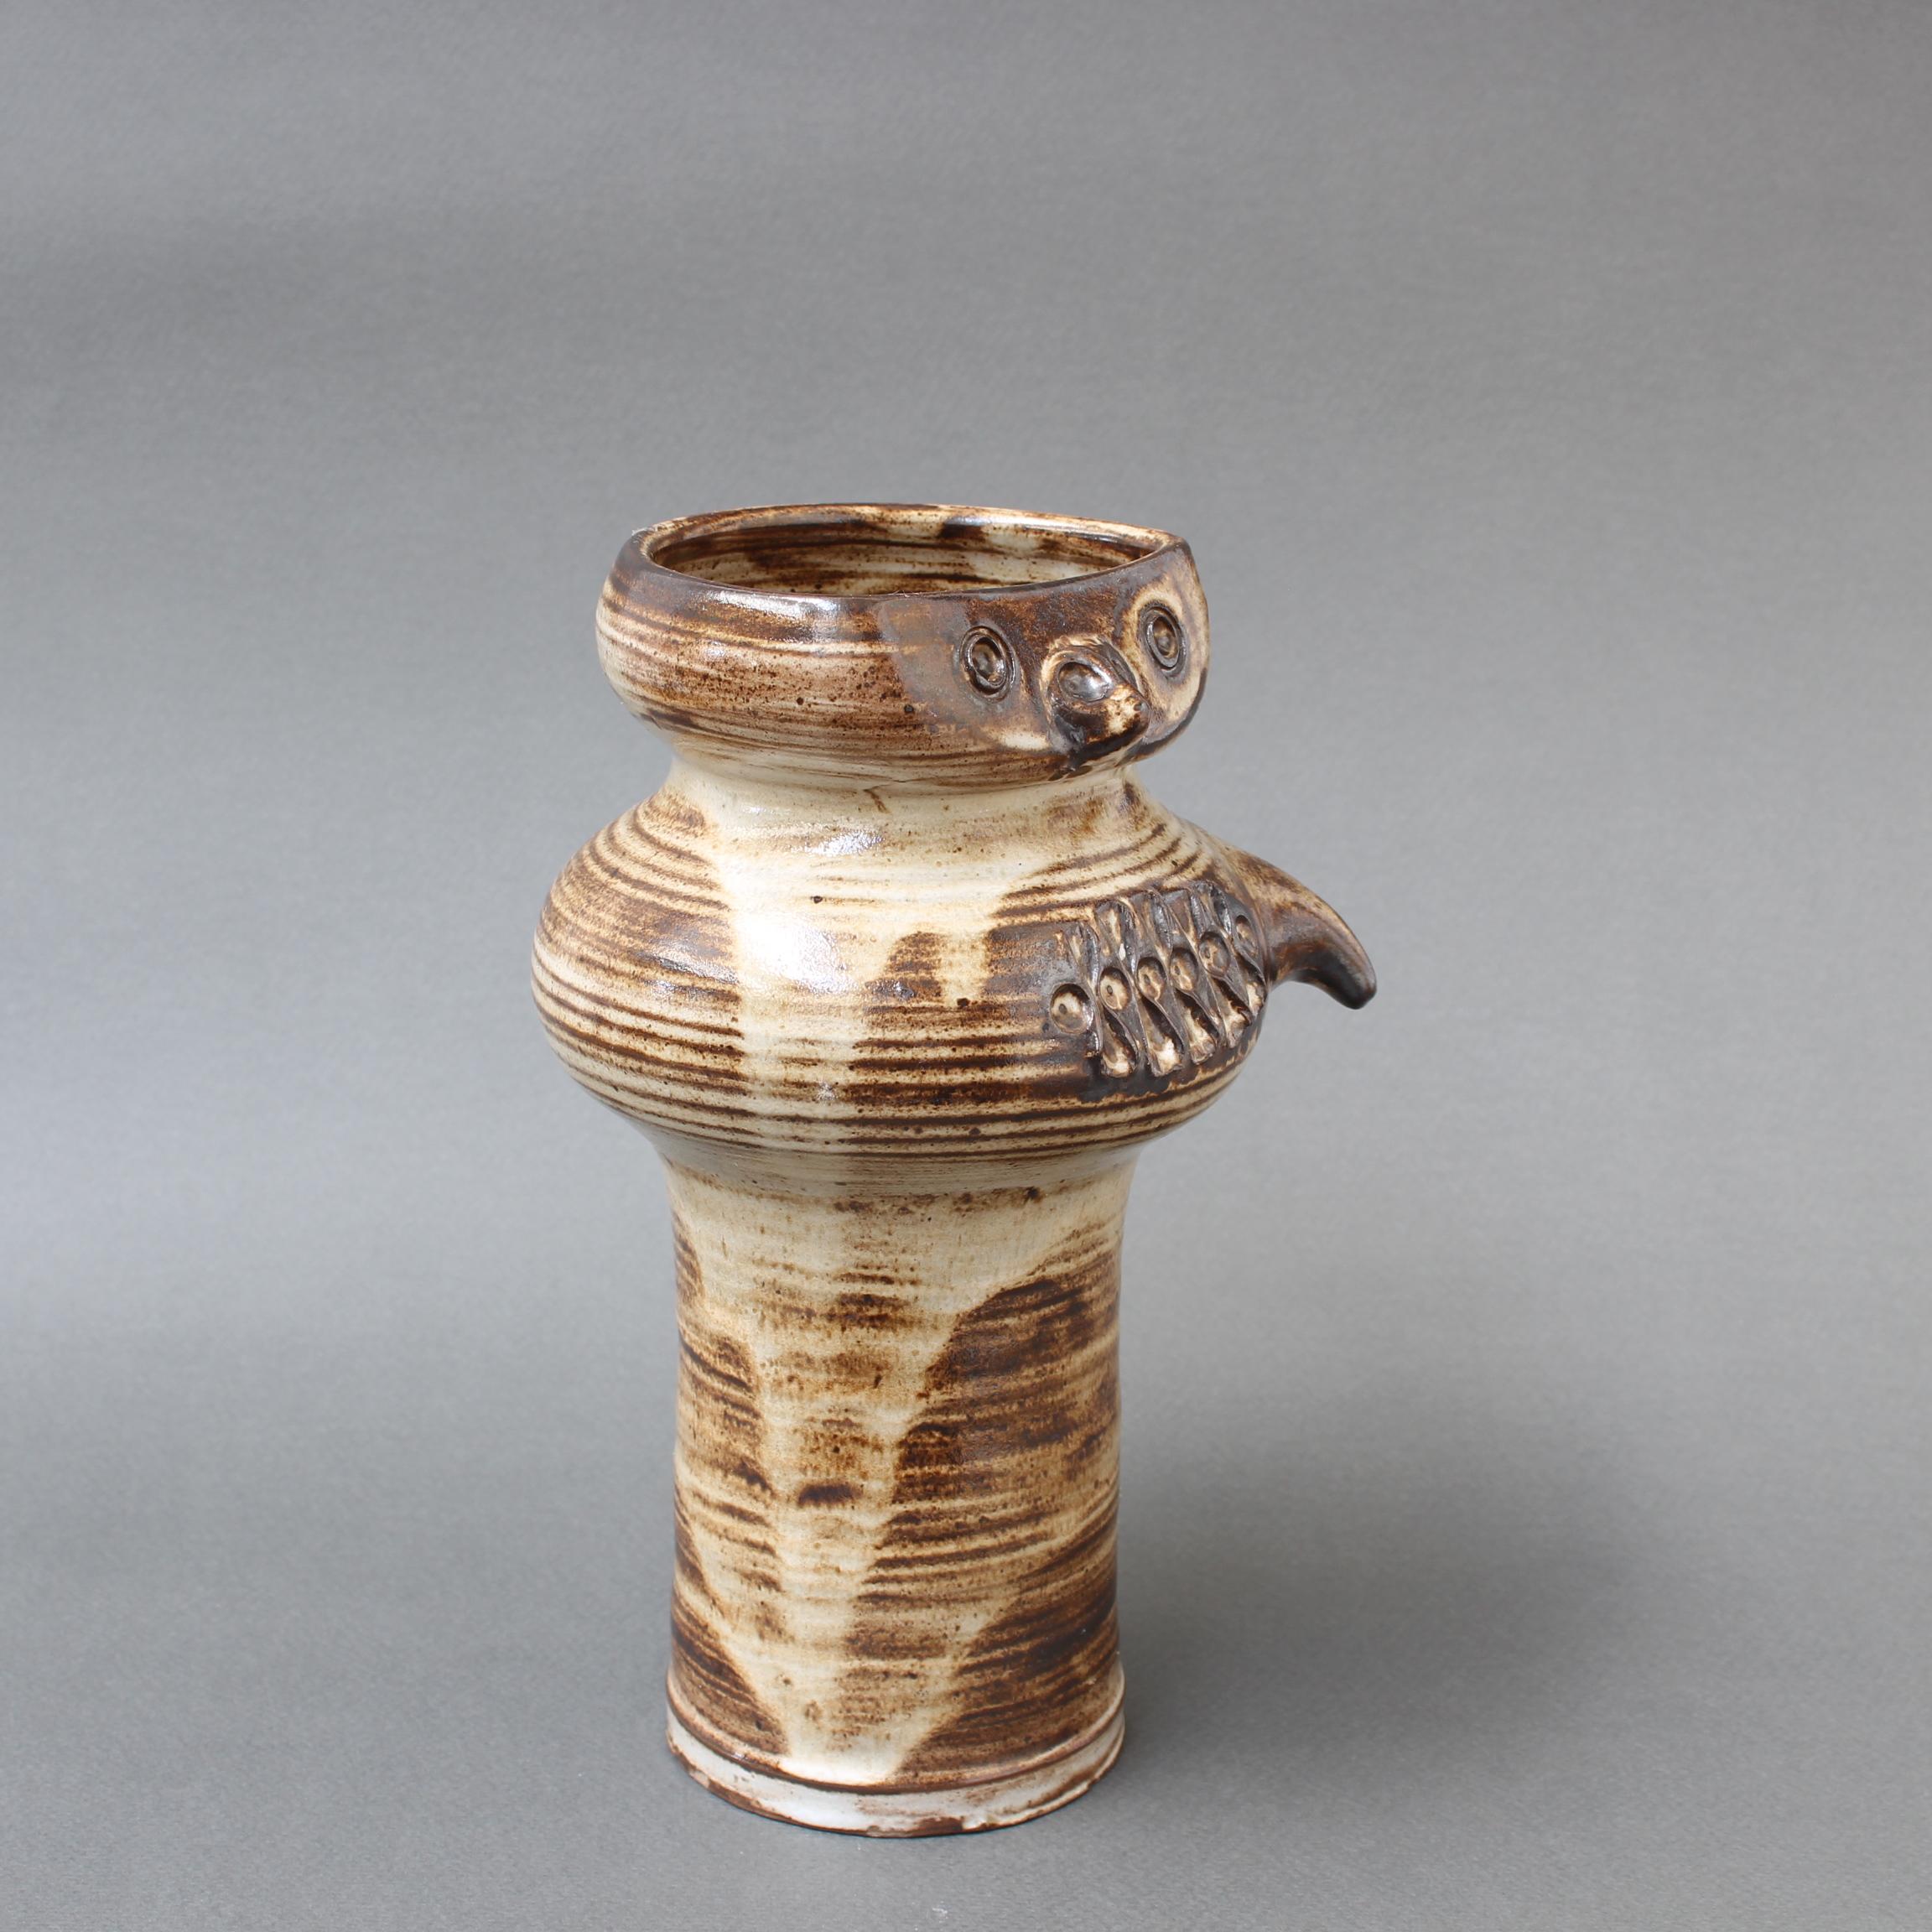 Vase à hibou stylisé en céramique émaillée (vers les années 1960) du célèbre céramiste français Jacques Pouchain (1925-2005). Il s'agit d'un charmant vase en céramique dans le style inimitable de Pouchain. La base arrondie est décorée de lignes